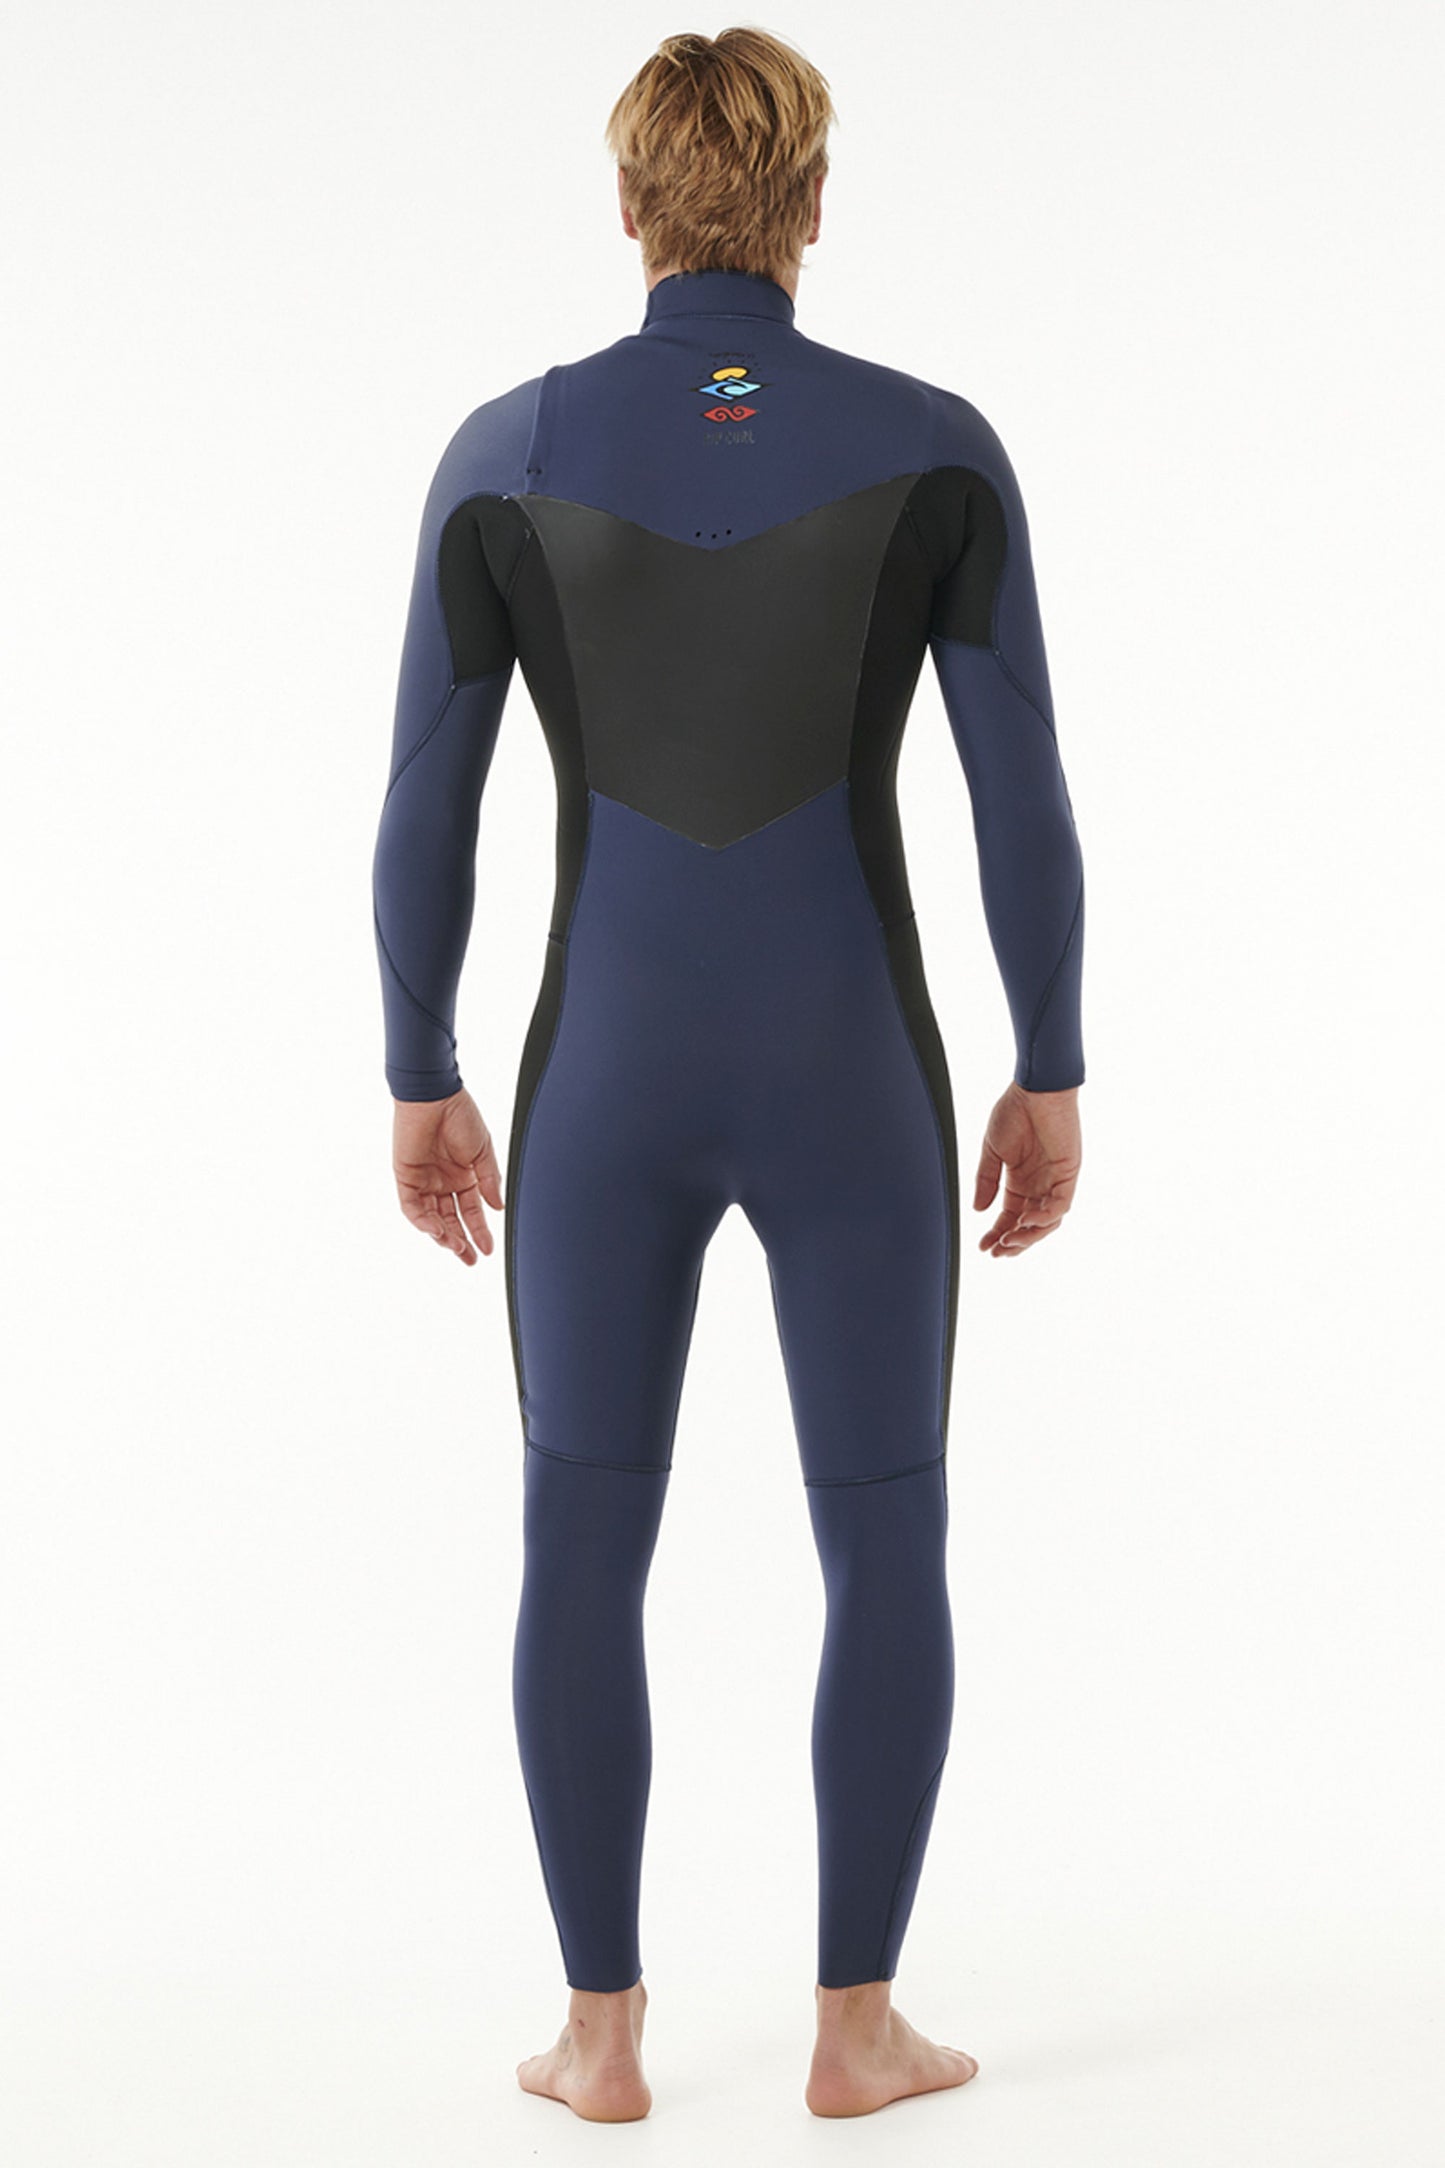 Pukas-Surf-Shop-Rip-Curl-wetsuit-man-dawn-patrol-4-3-chest-zip-dark-navy